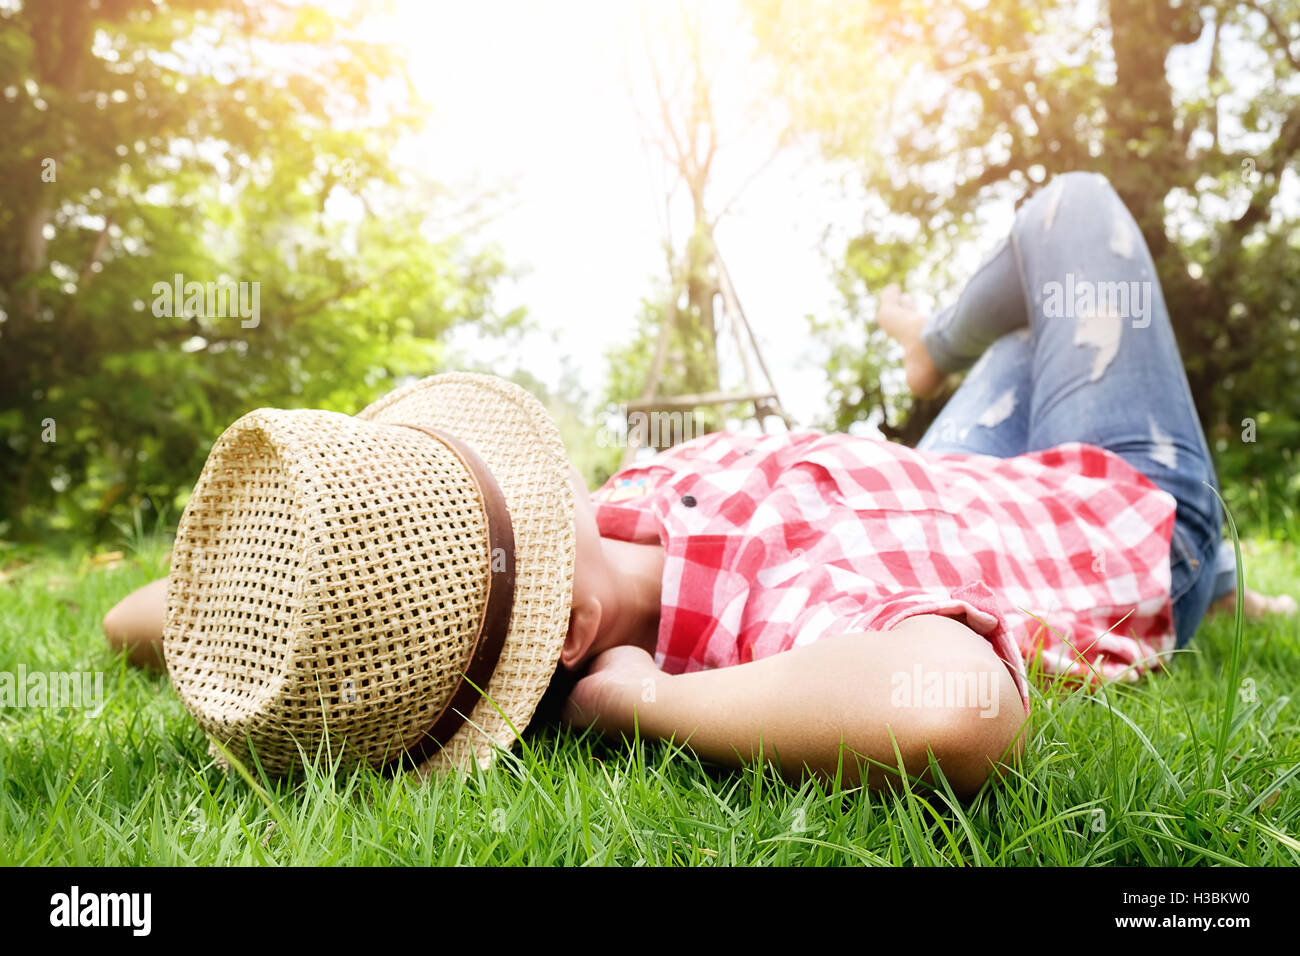 Se détendre,la liberté,girl, herbe, vert, bonheur,lifestyle,piscine, parc,hipster Banque D'Images